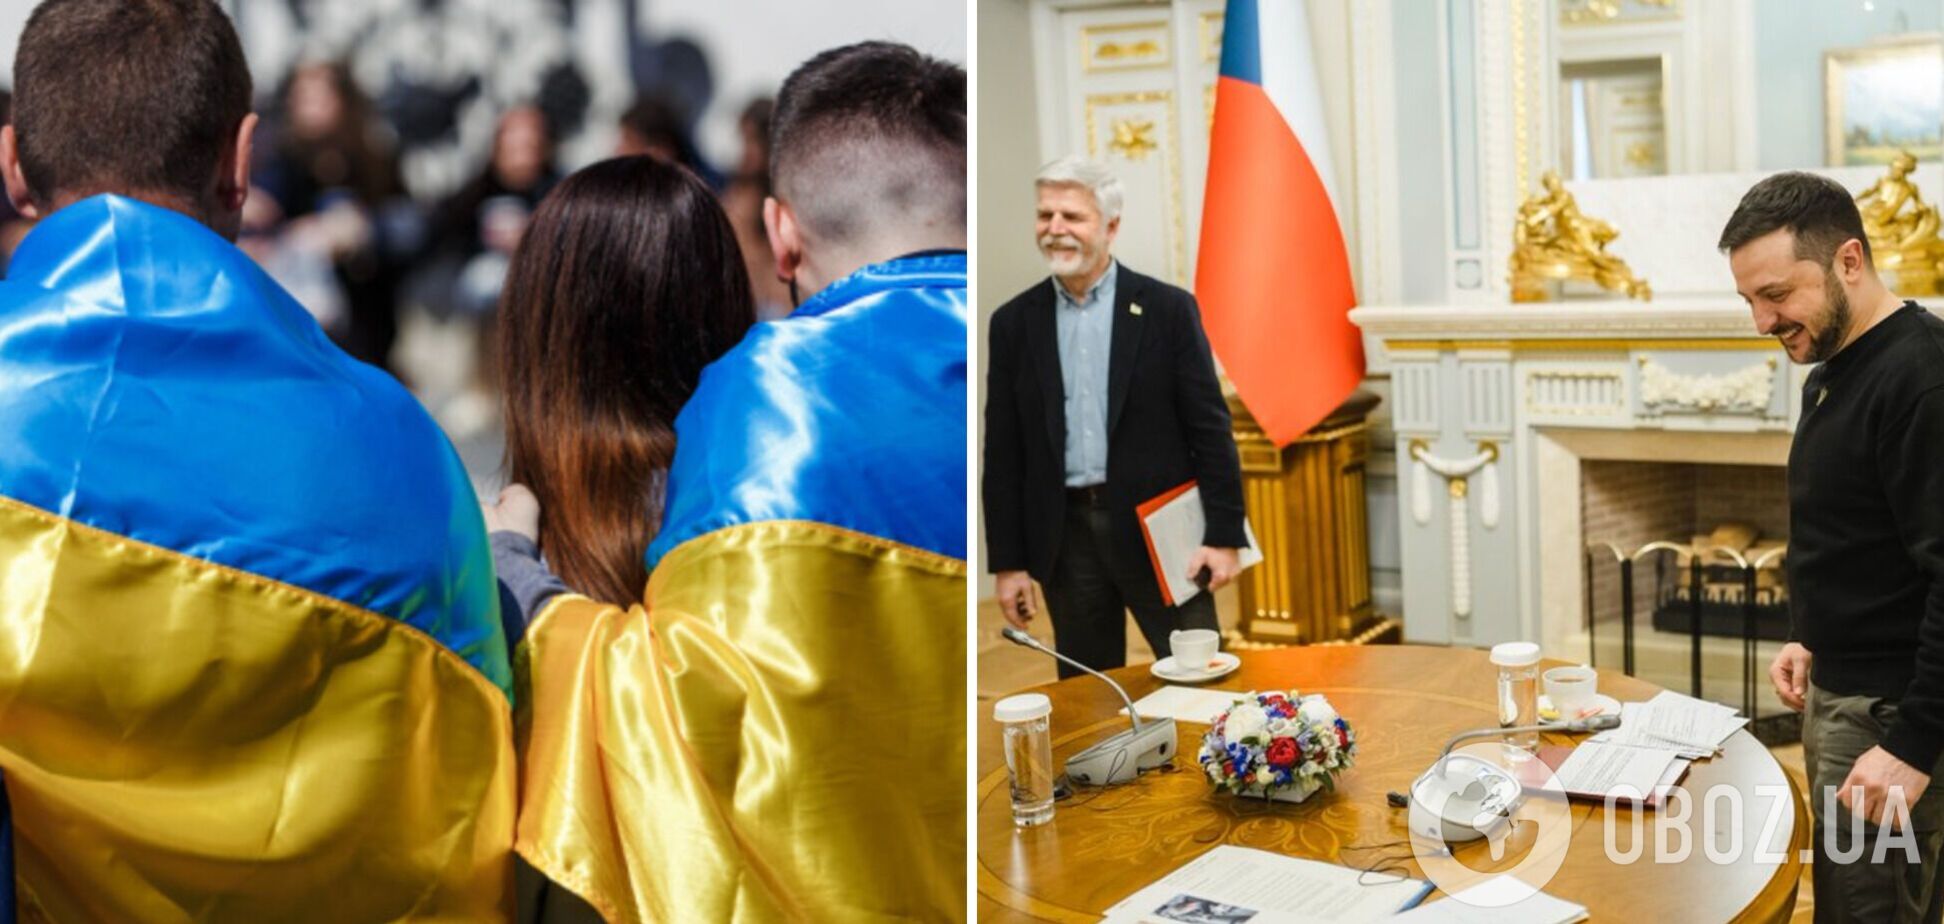 Президент Чехии: у Зеленского не так много поводов для улыбки, но он сумел поддержать нацию